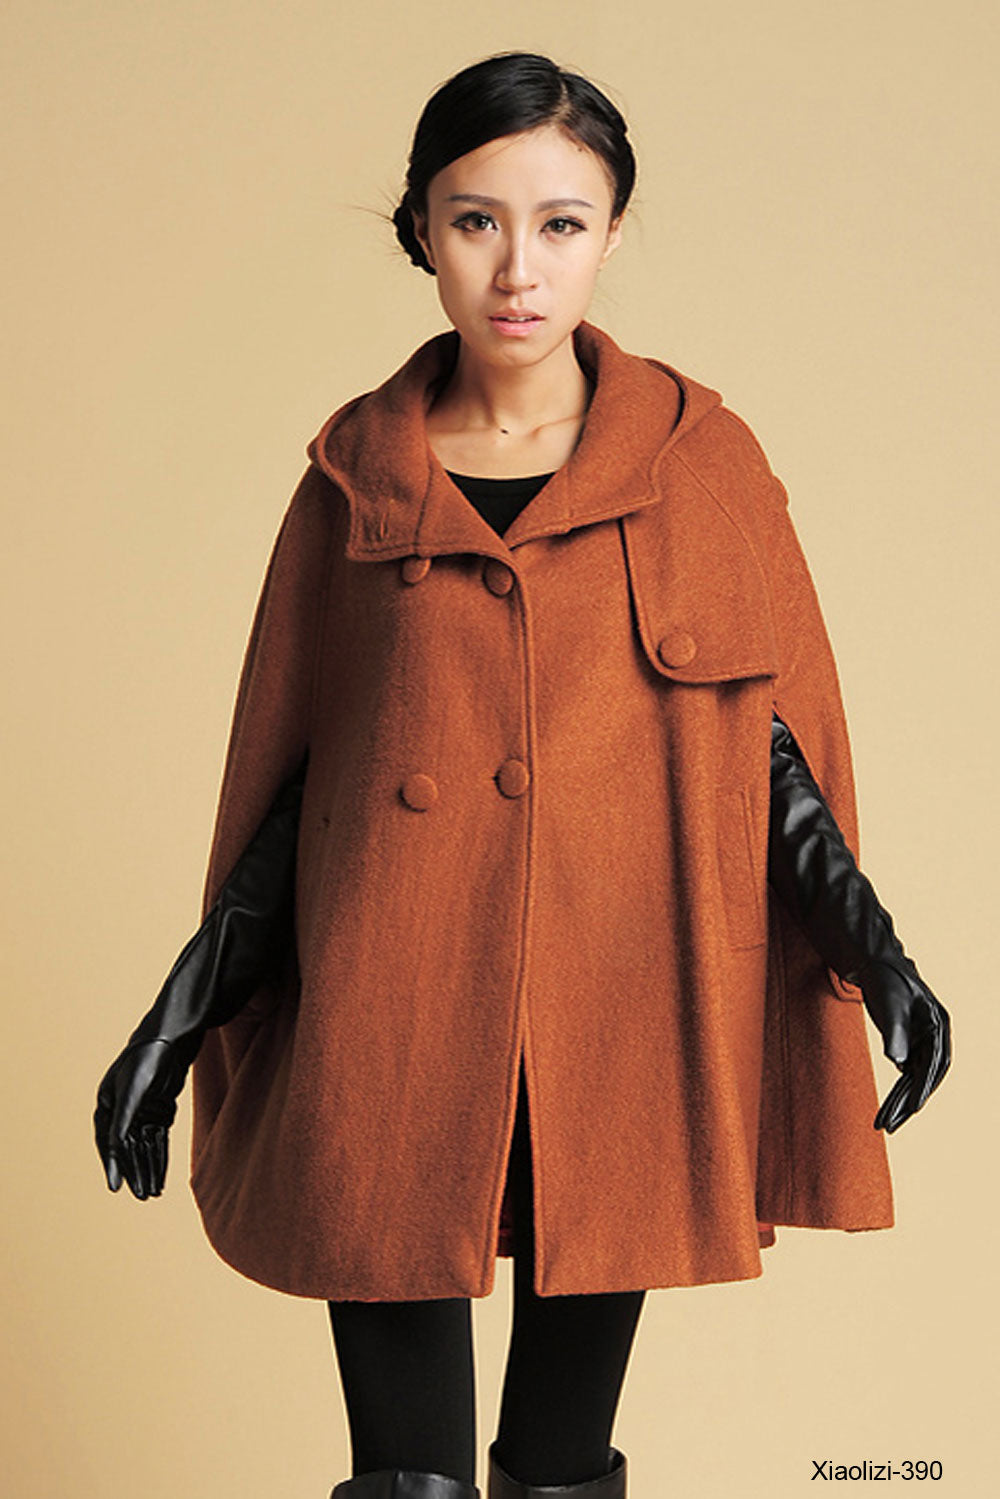 womens's hooded cape coat 1130#